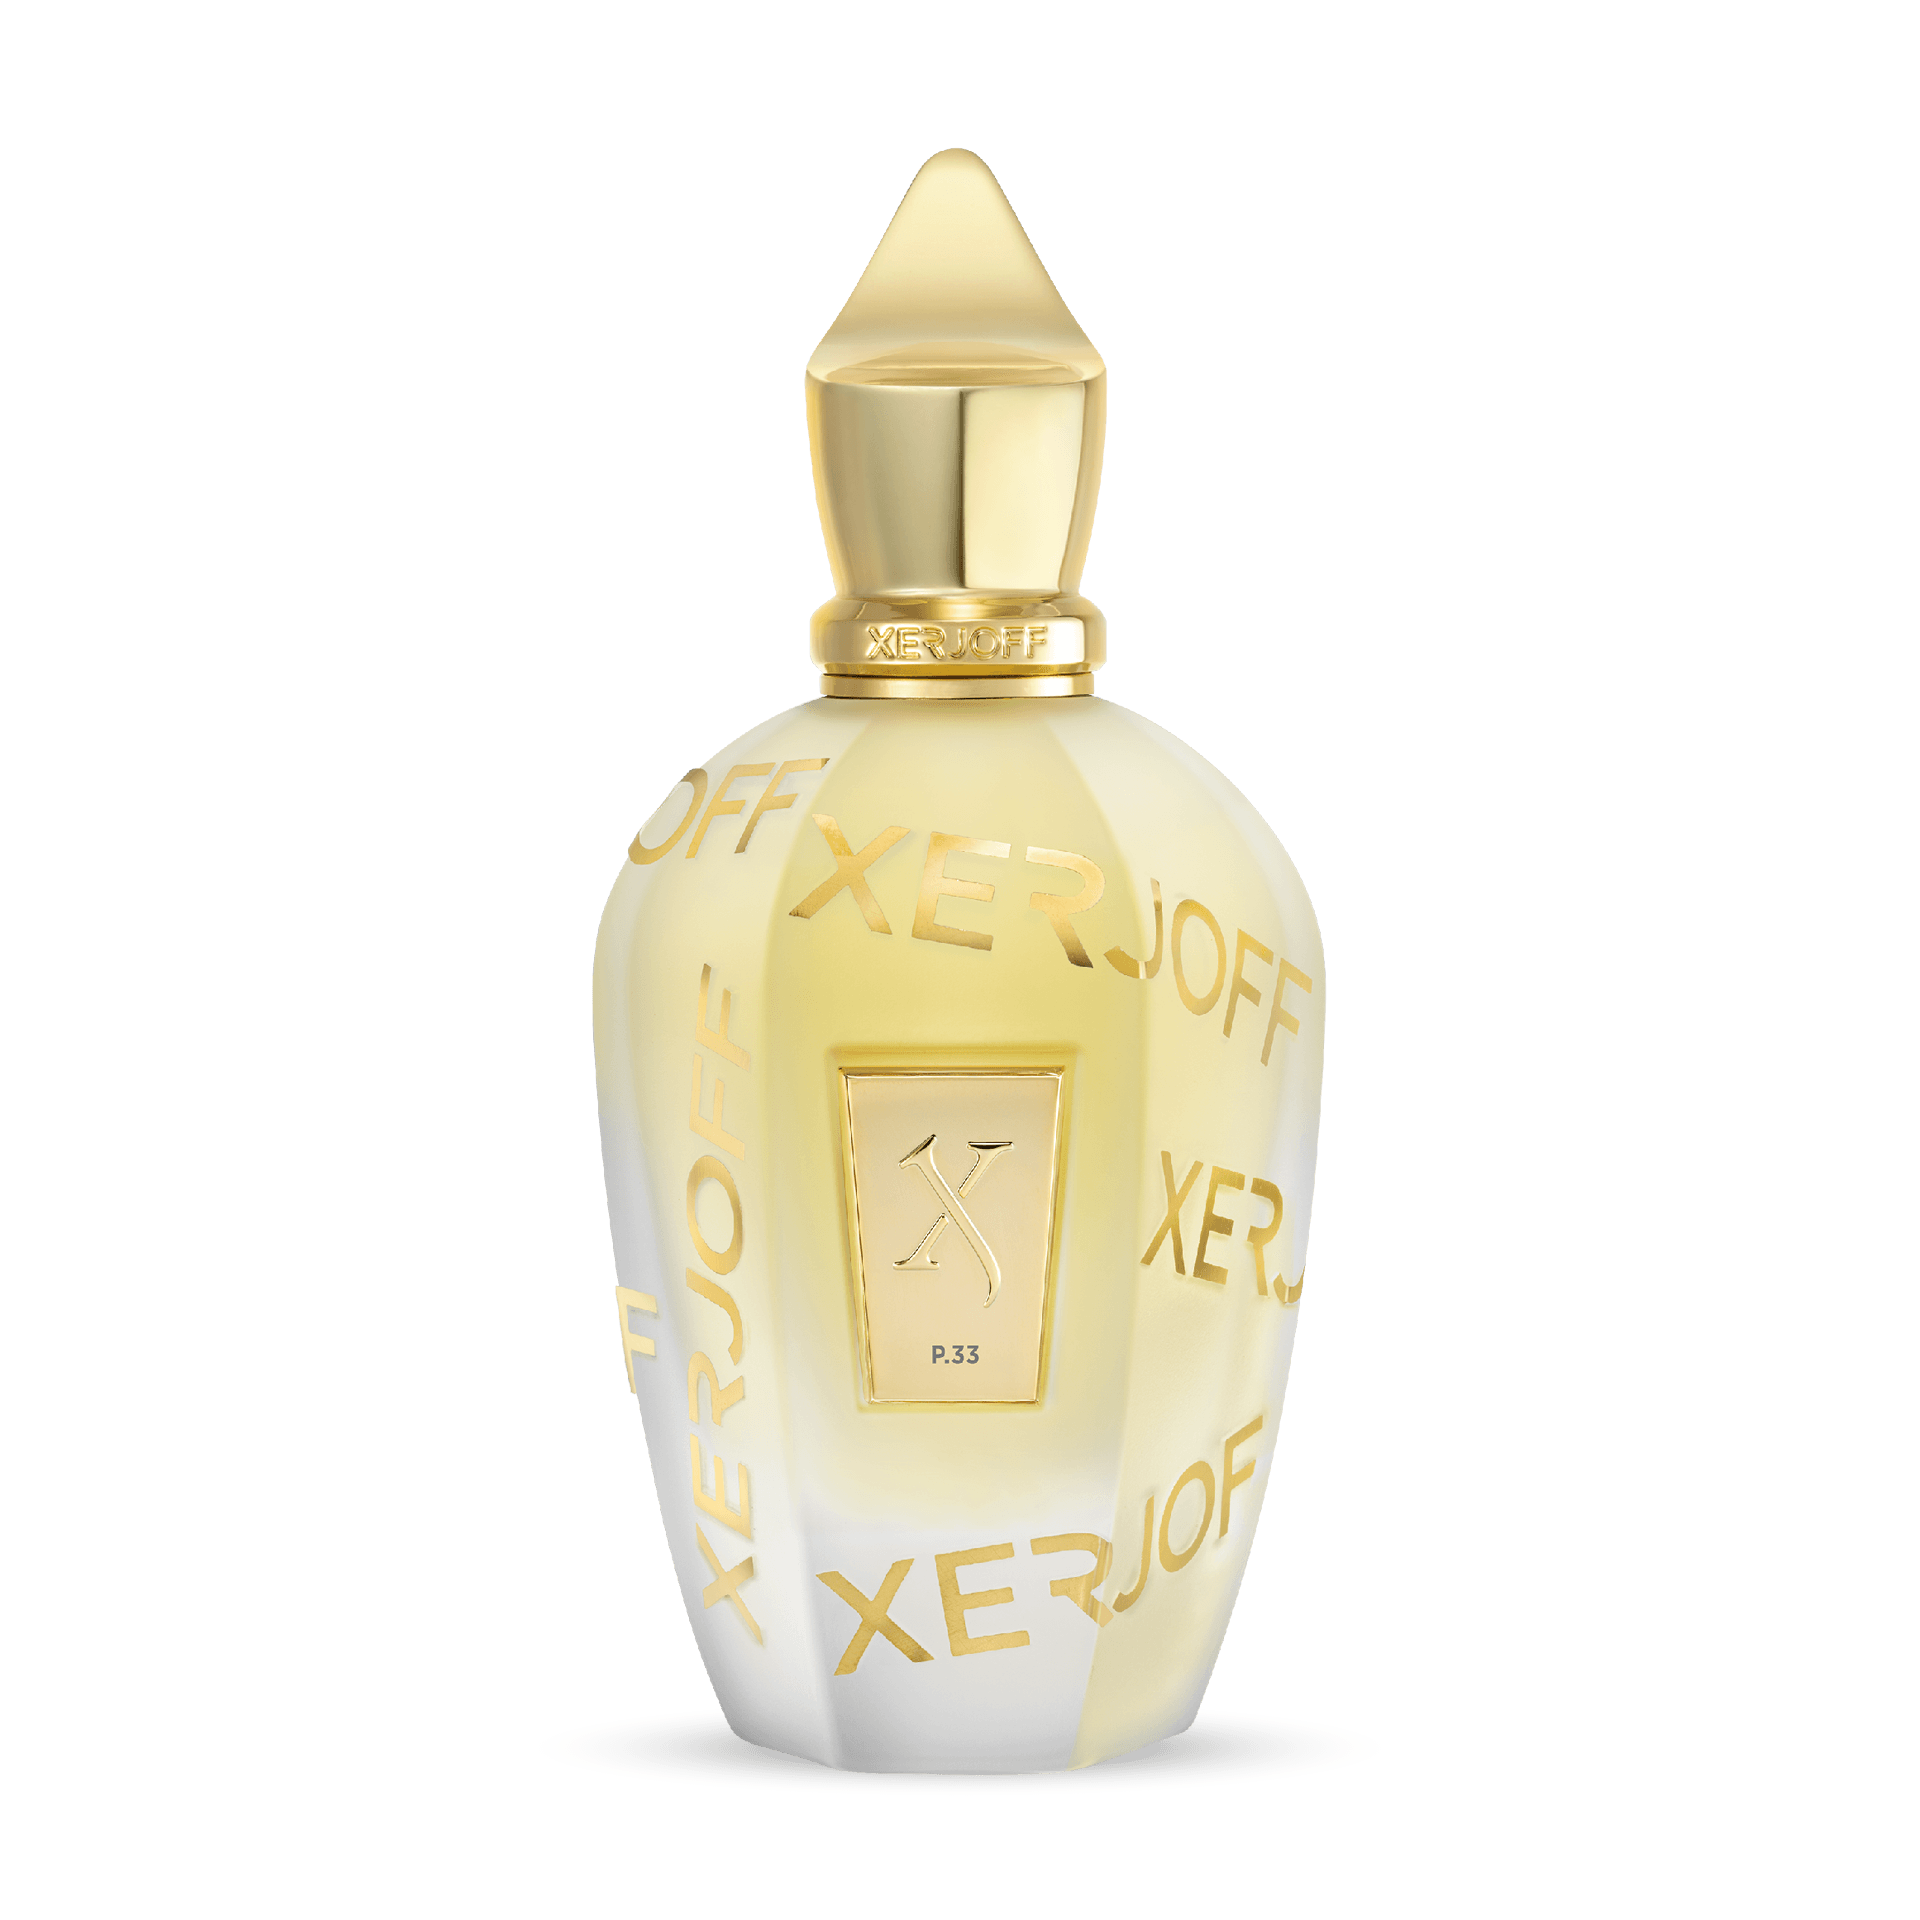 XERJOFF - AAFKES │ distribution de parfums exclusifs